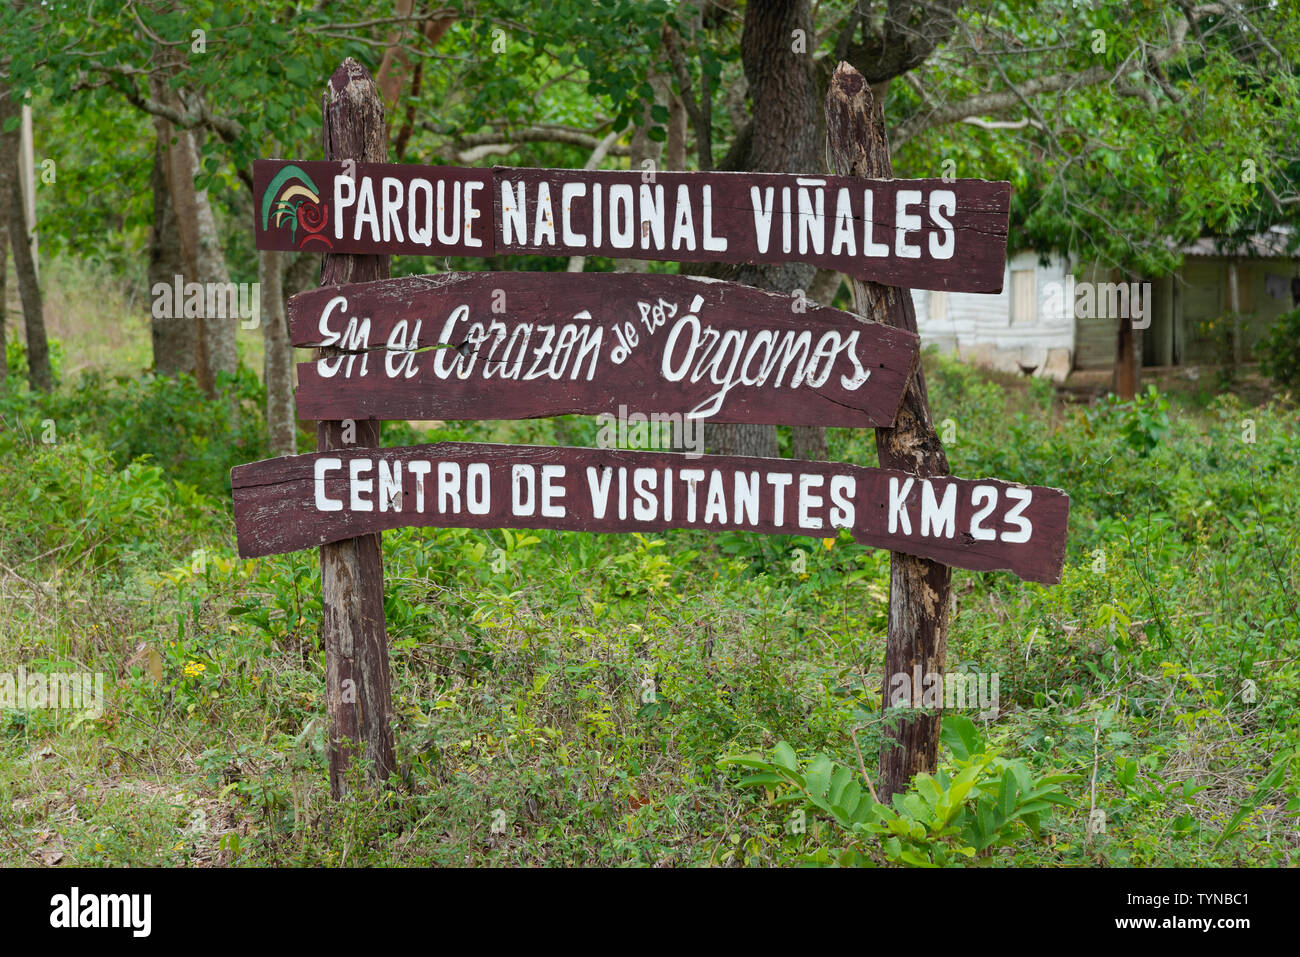 Parque Nacional Viñales sign - Viñales, provincia de Pinar del Río, Cuba, El Caribe Foto de stock